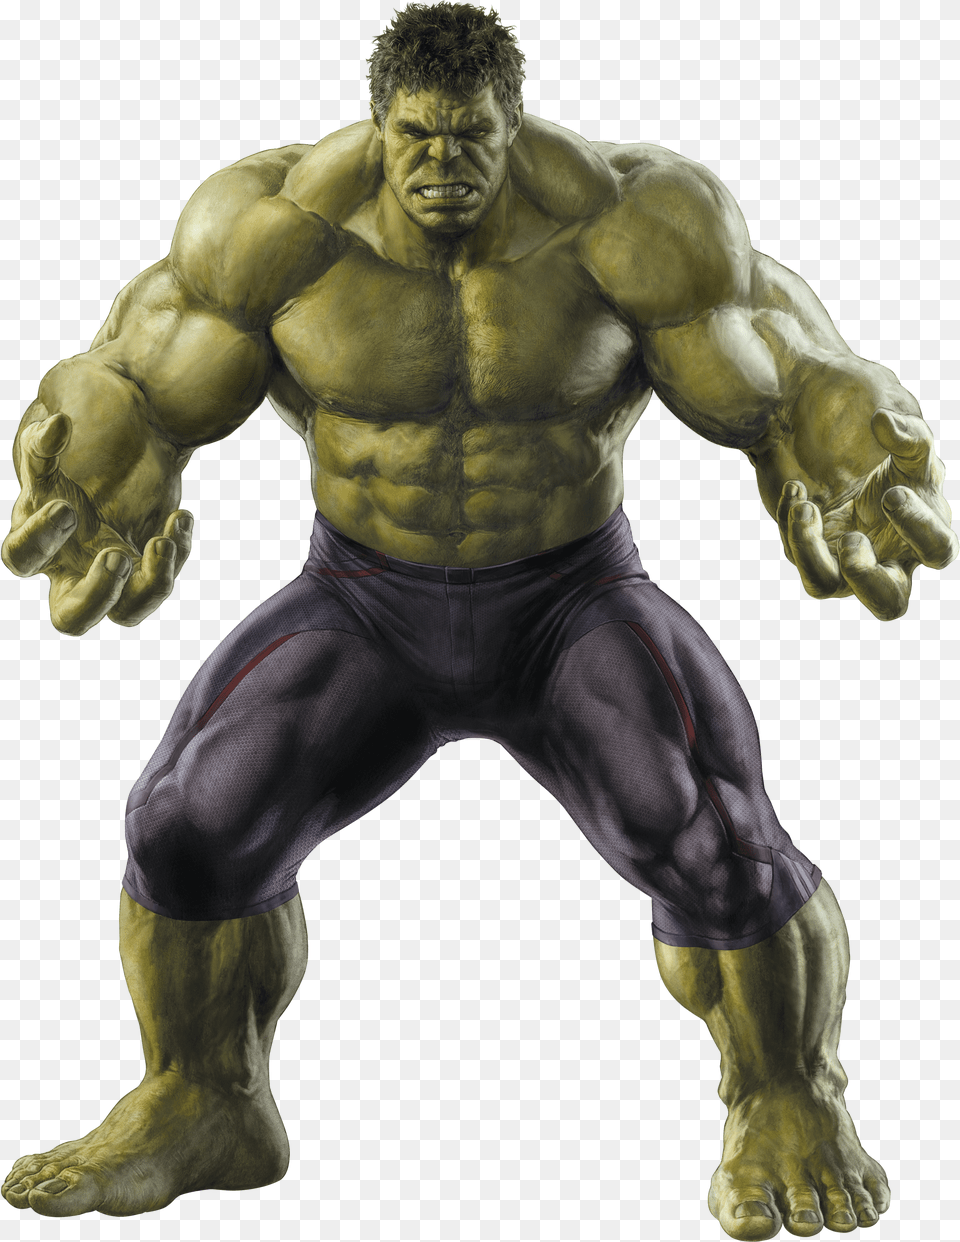 Hulk Png Image